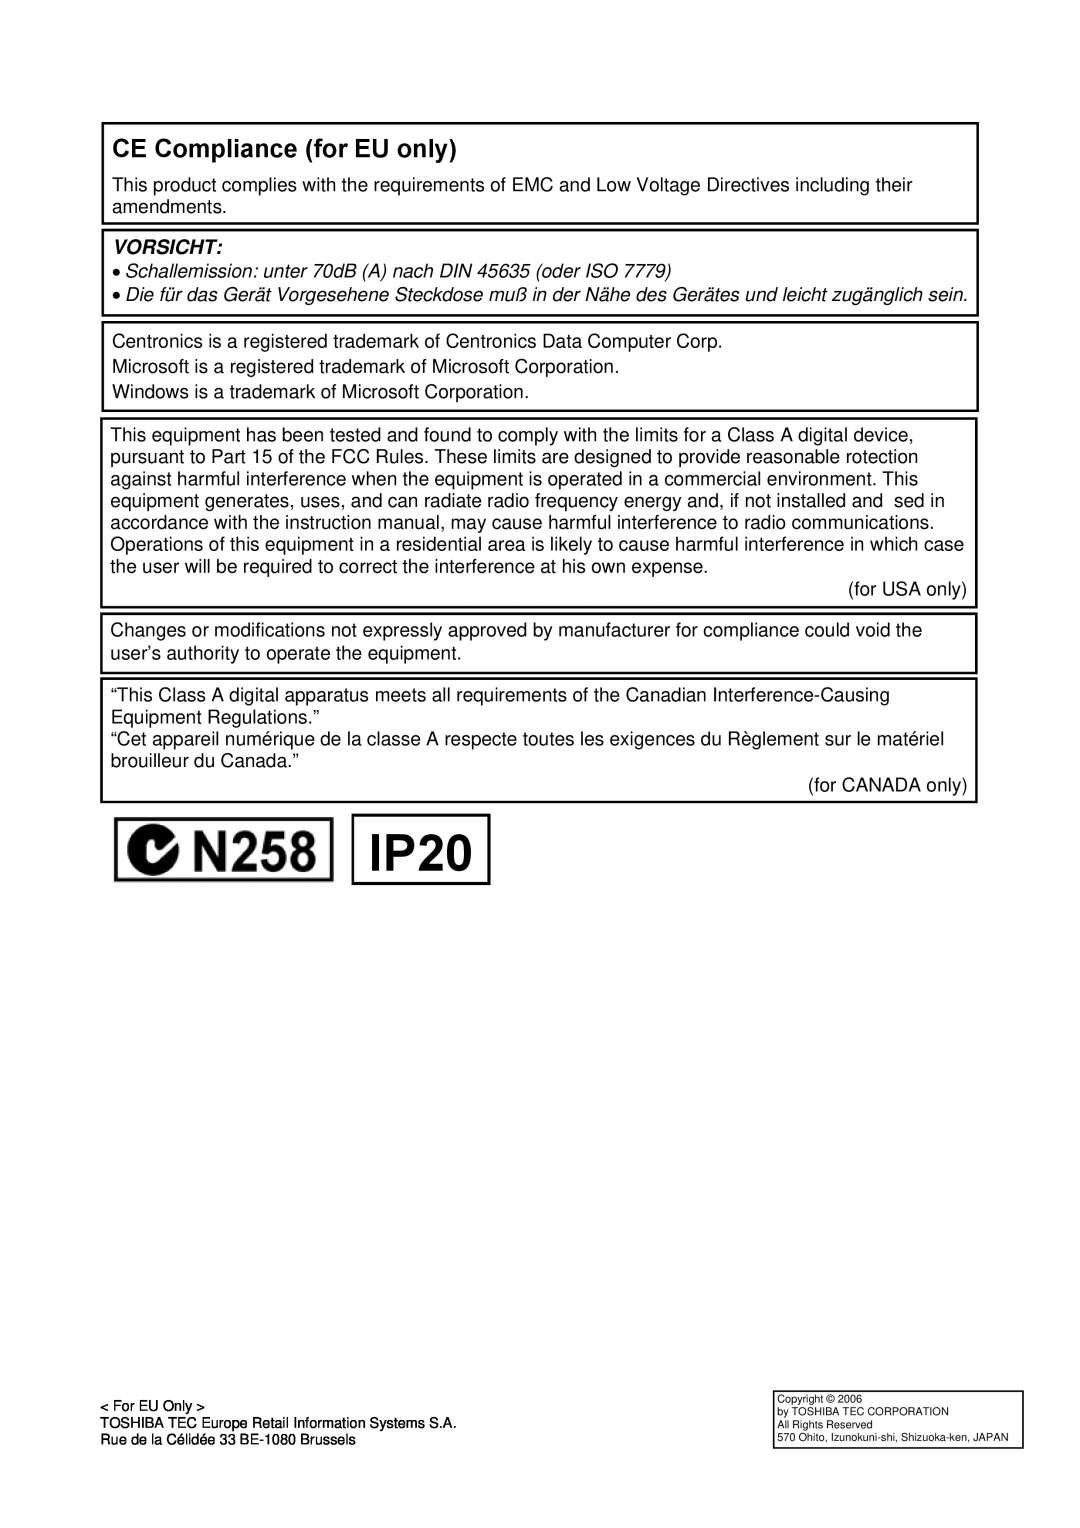 Toshiba EO1-33057D IP20, CE Compliance for EU only, Vorsicht, Schallemission unter 70dB A nach DIN 45635 oder ISO 